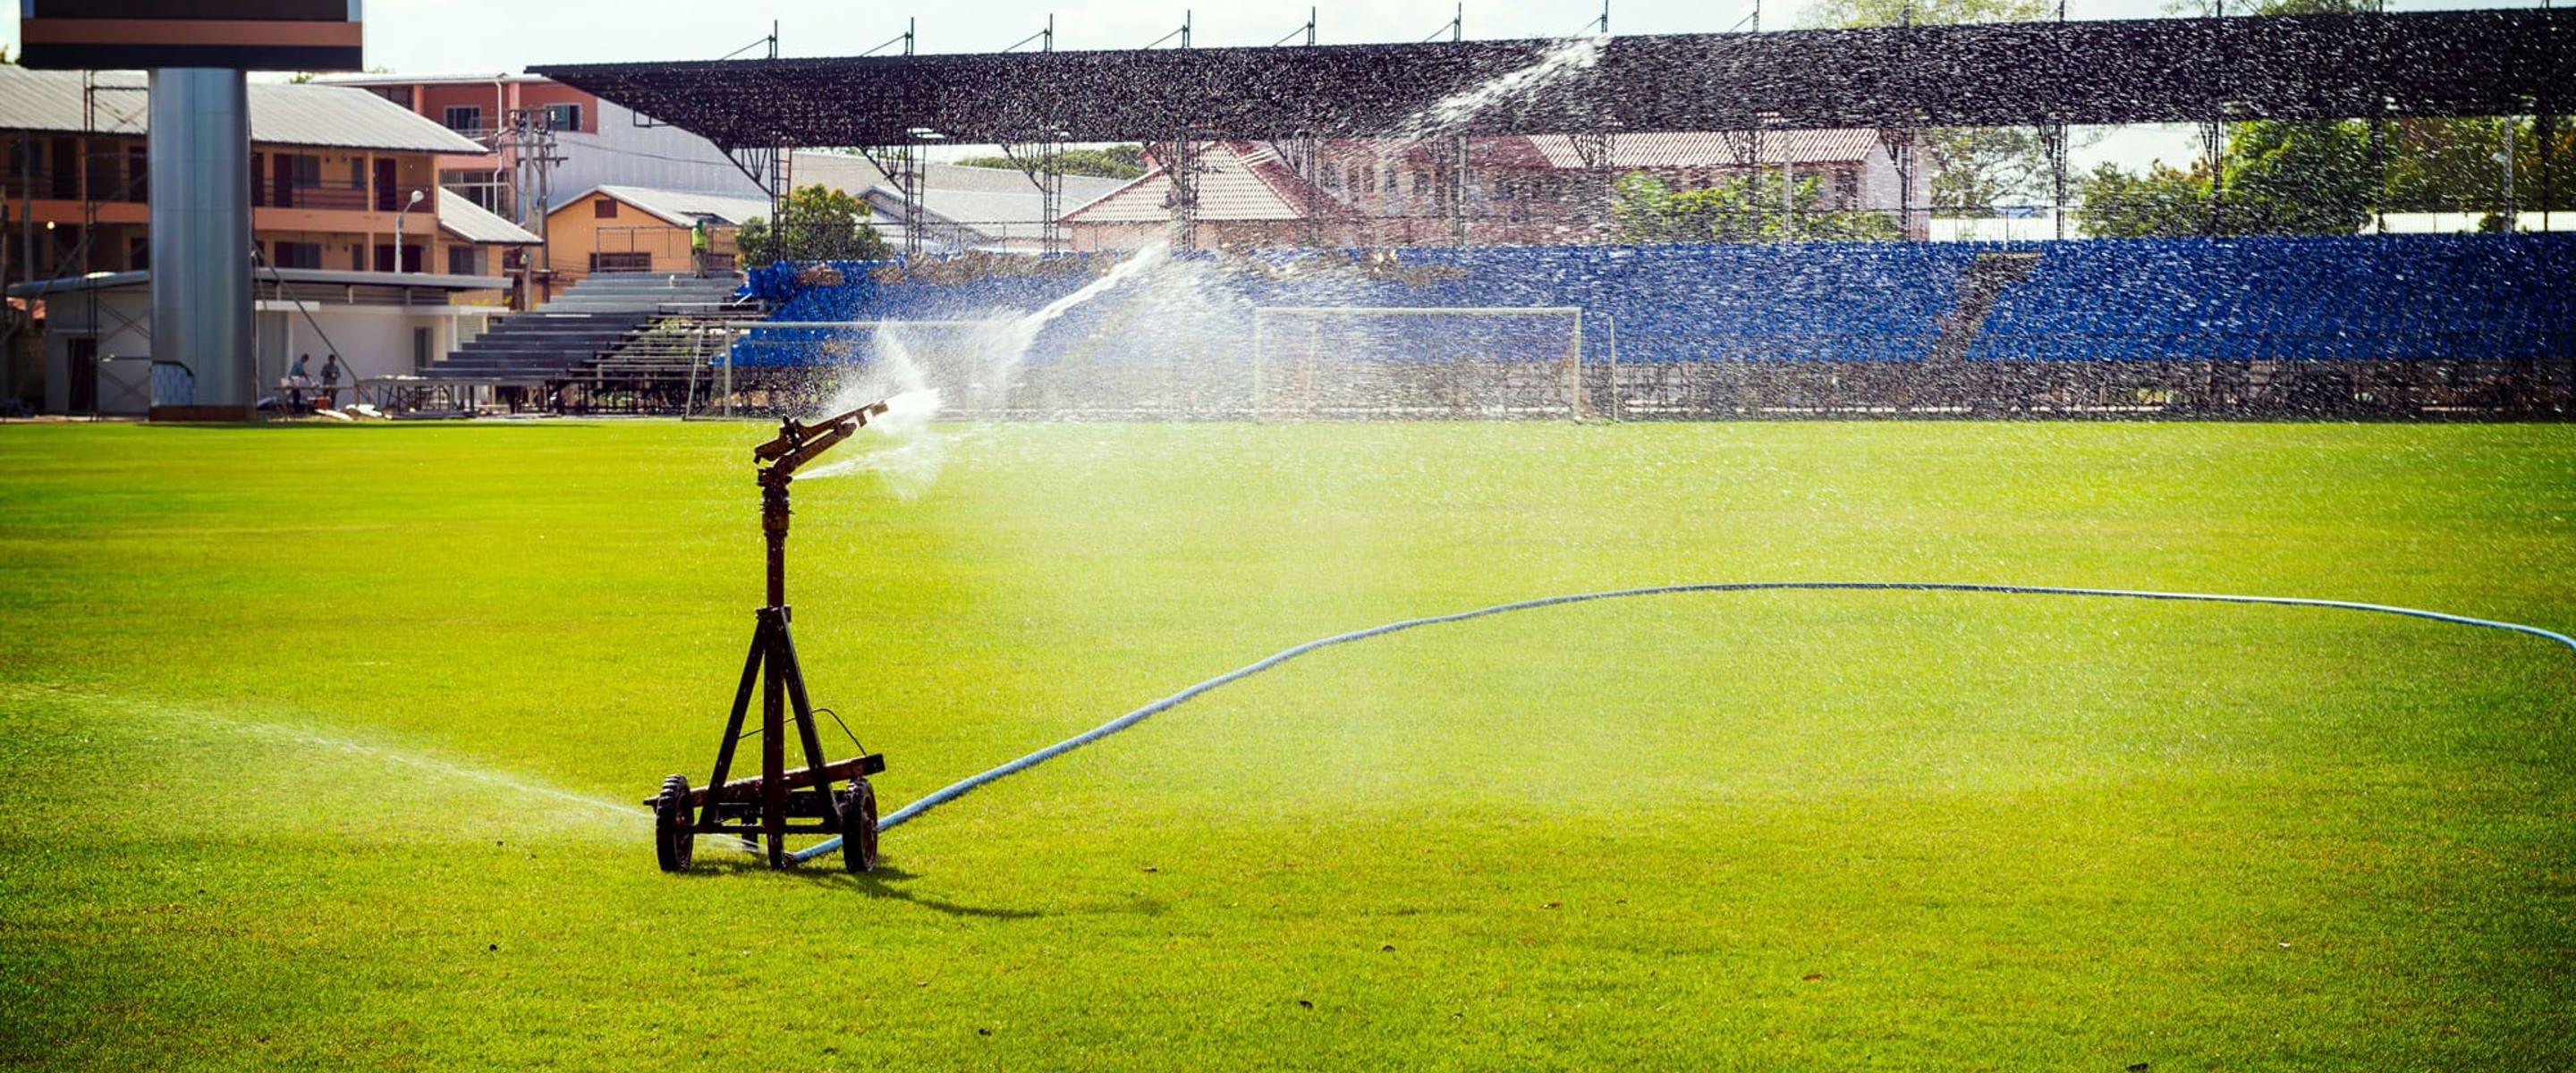 A water sprinkler watering a sporting field